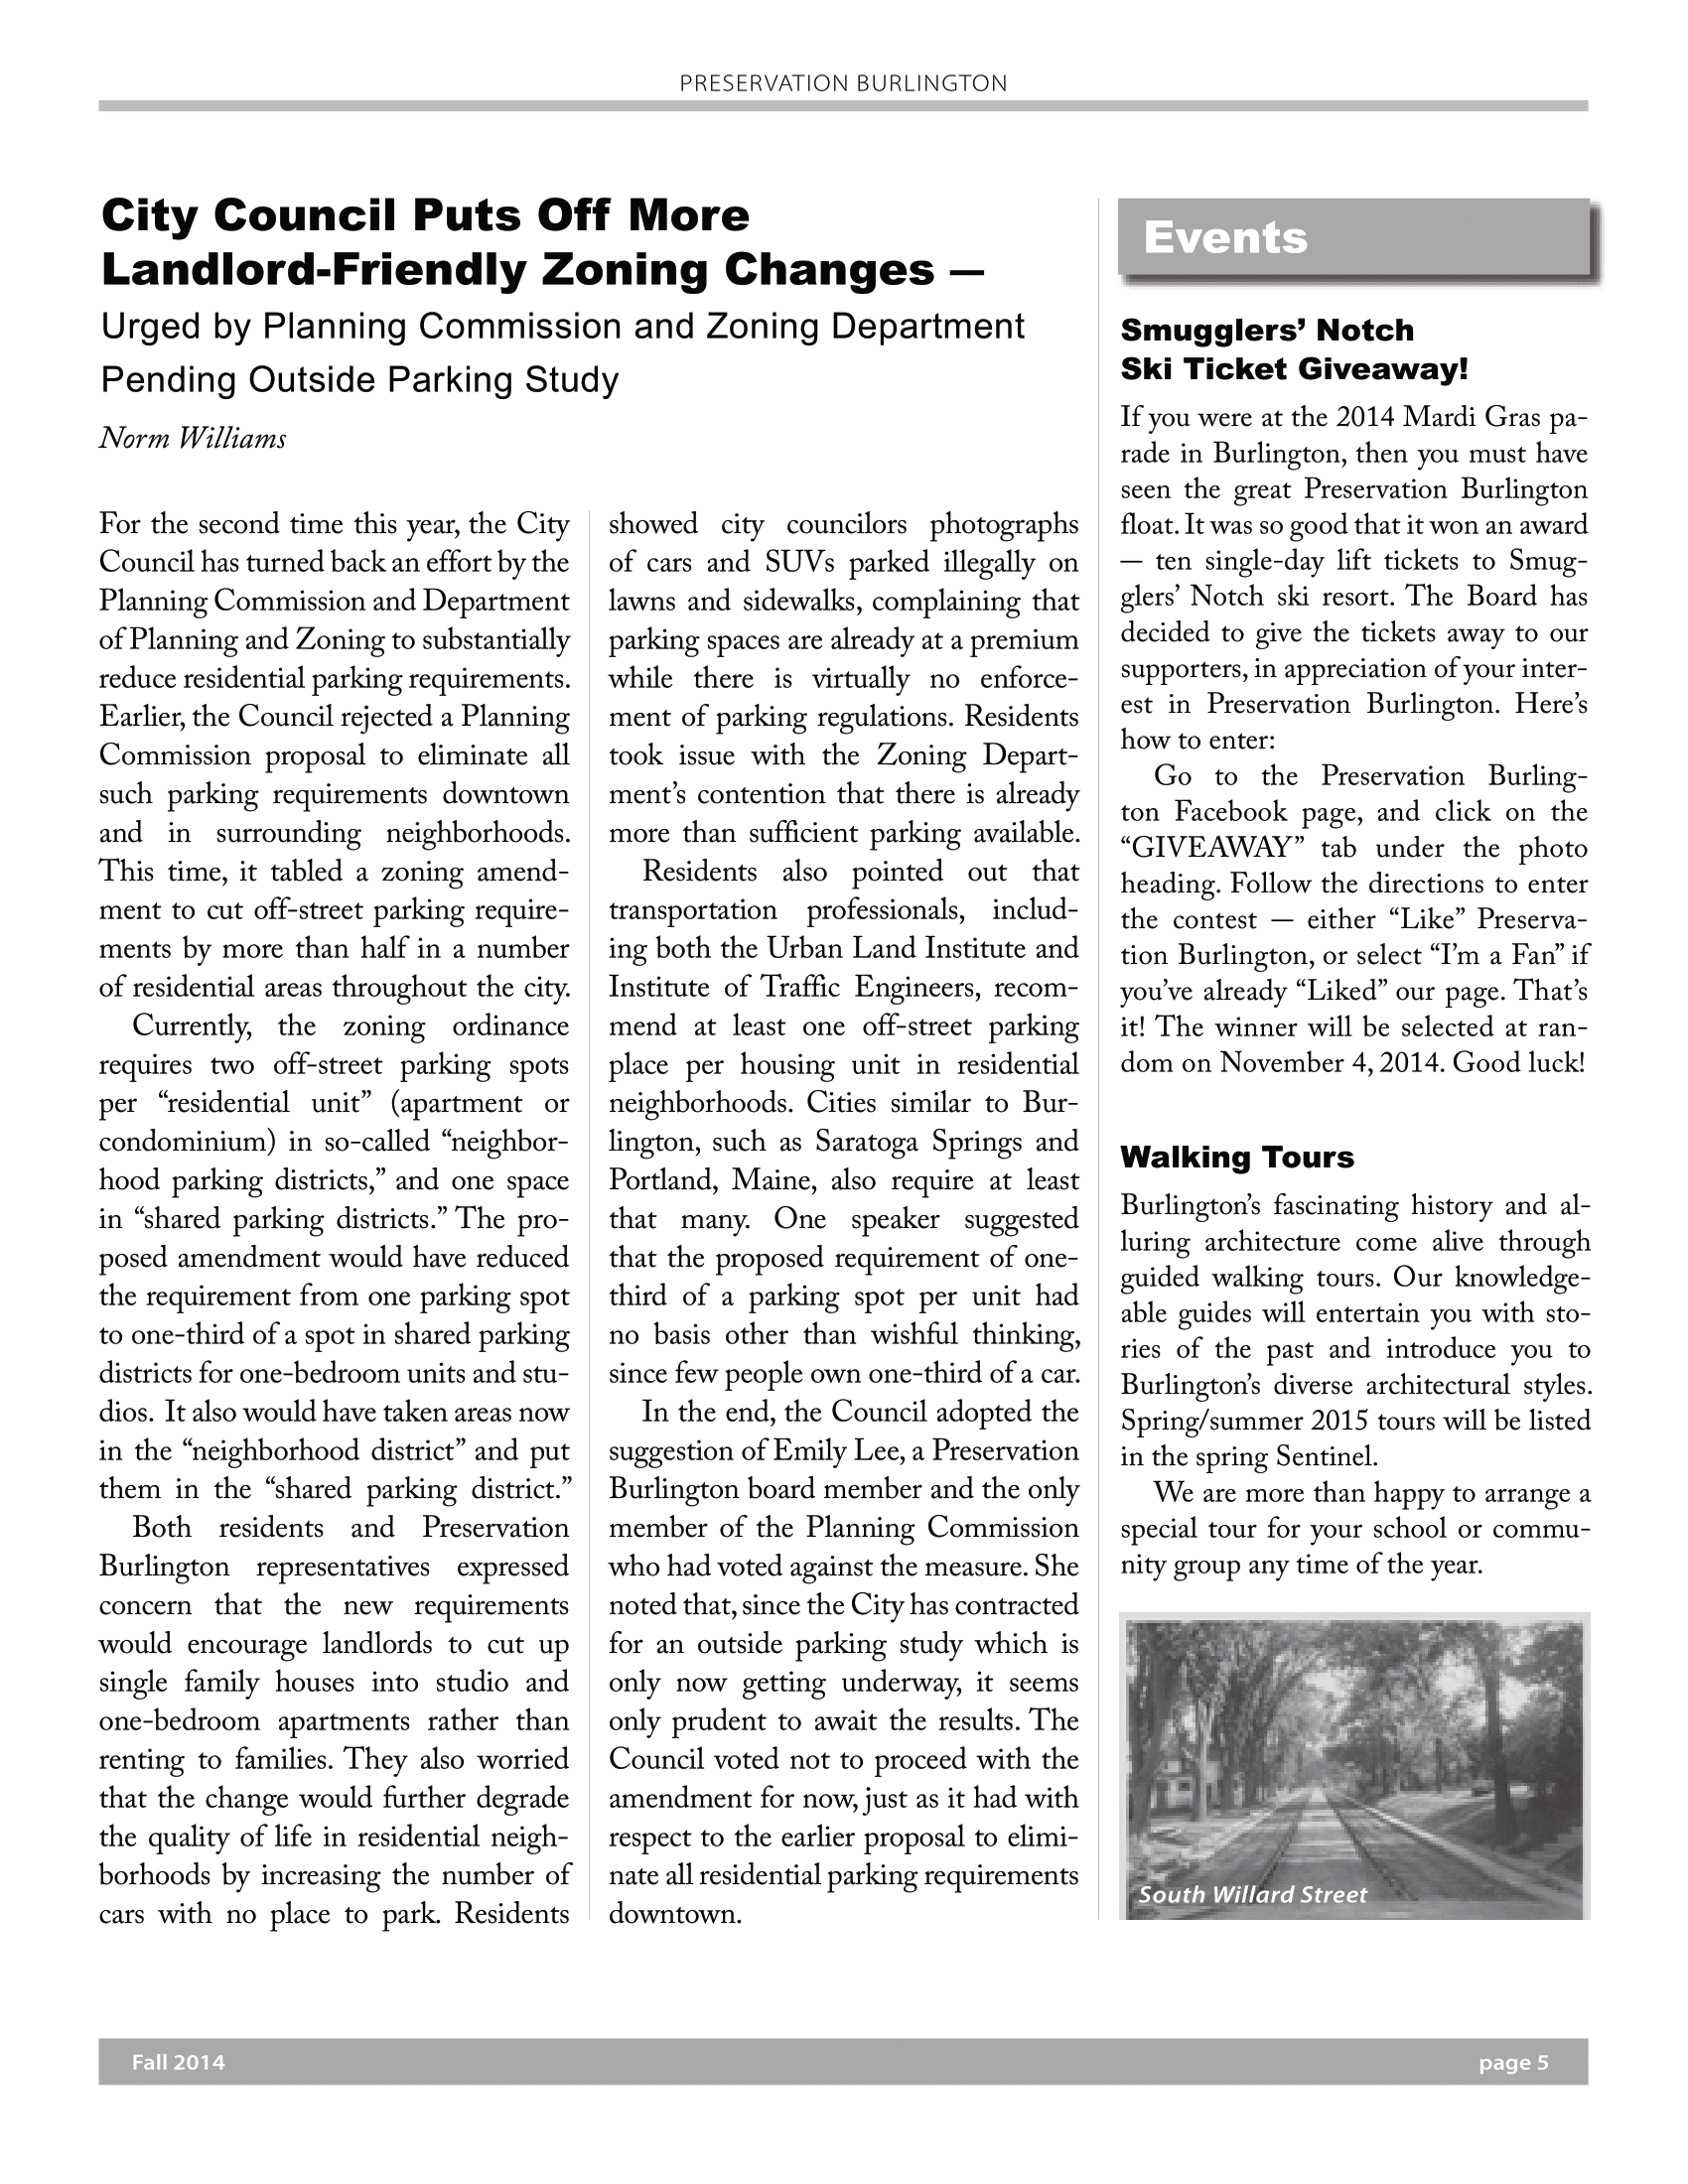 preservation-burlington-newsletter-fall-2014-5.png